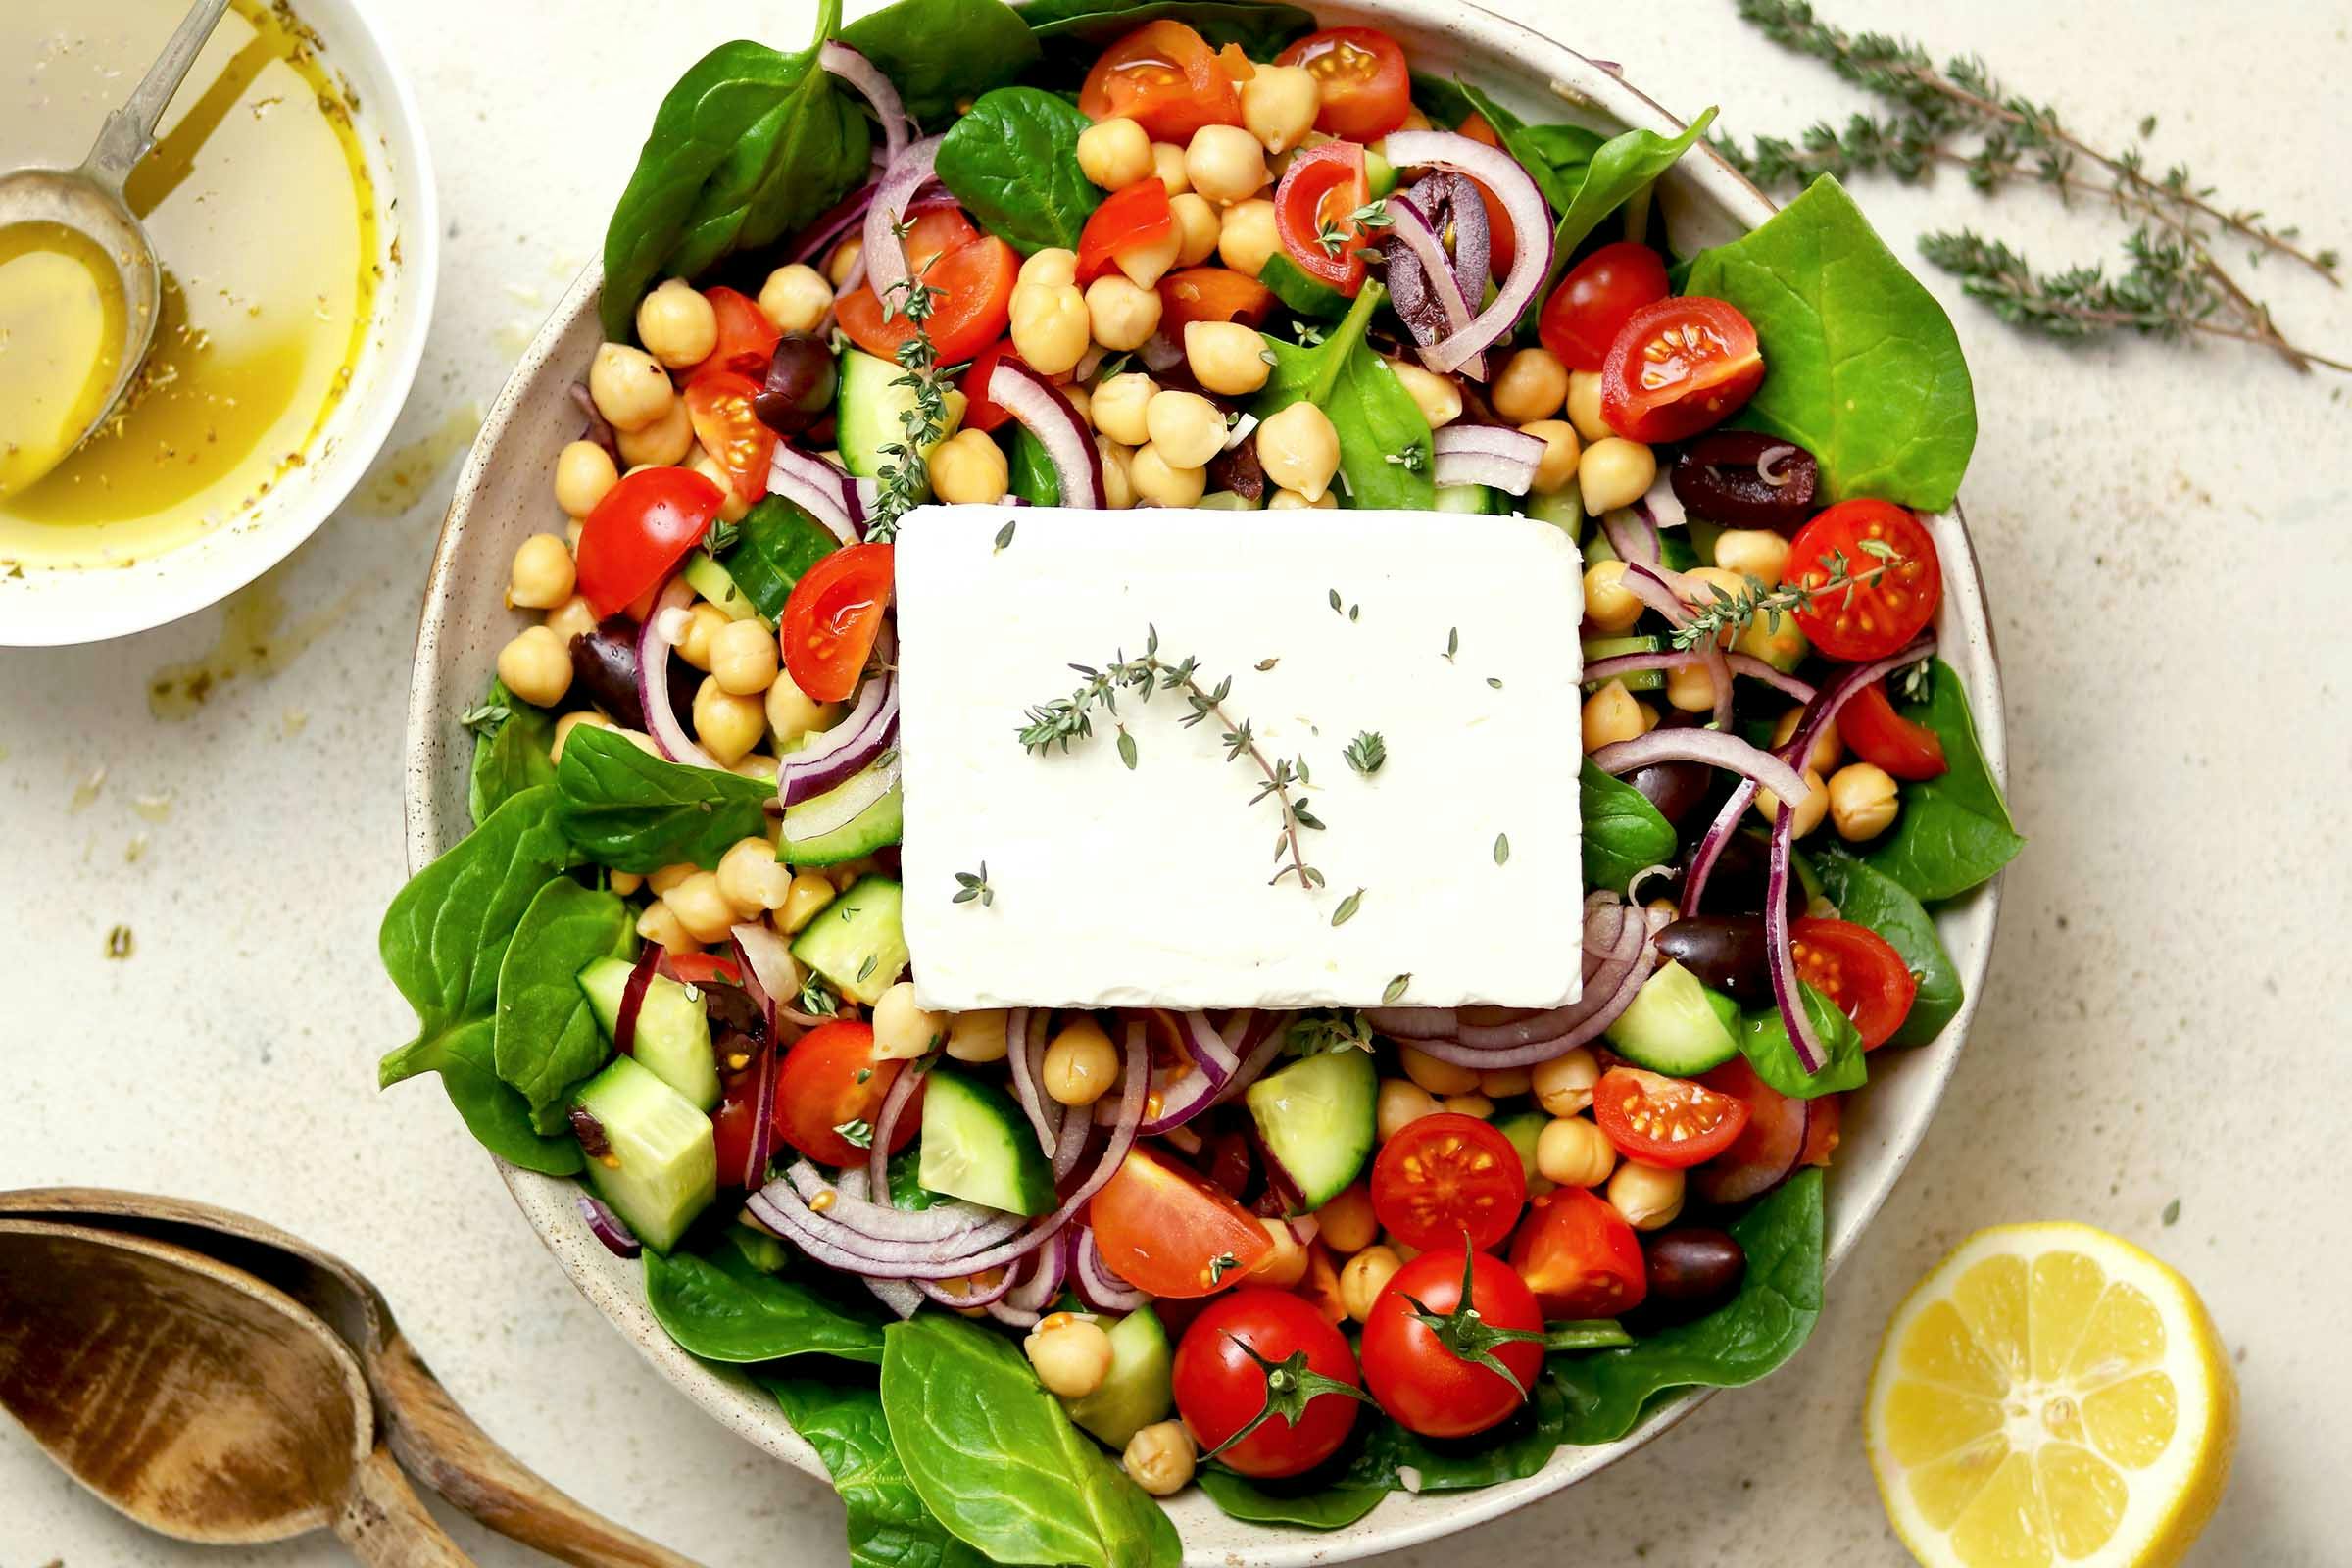 A spinach, mozzarella, tomato, and chickpea salad 